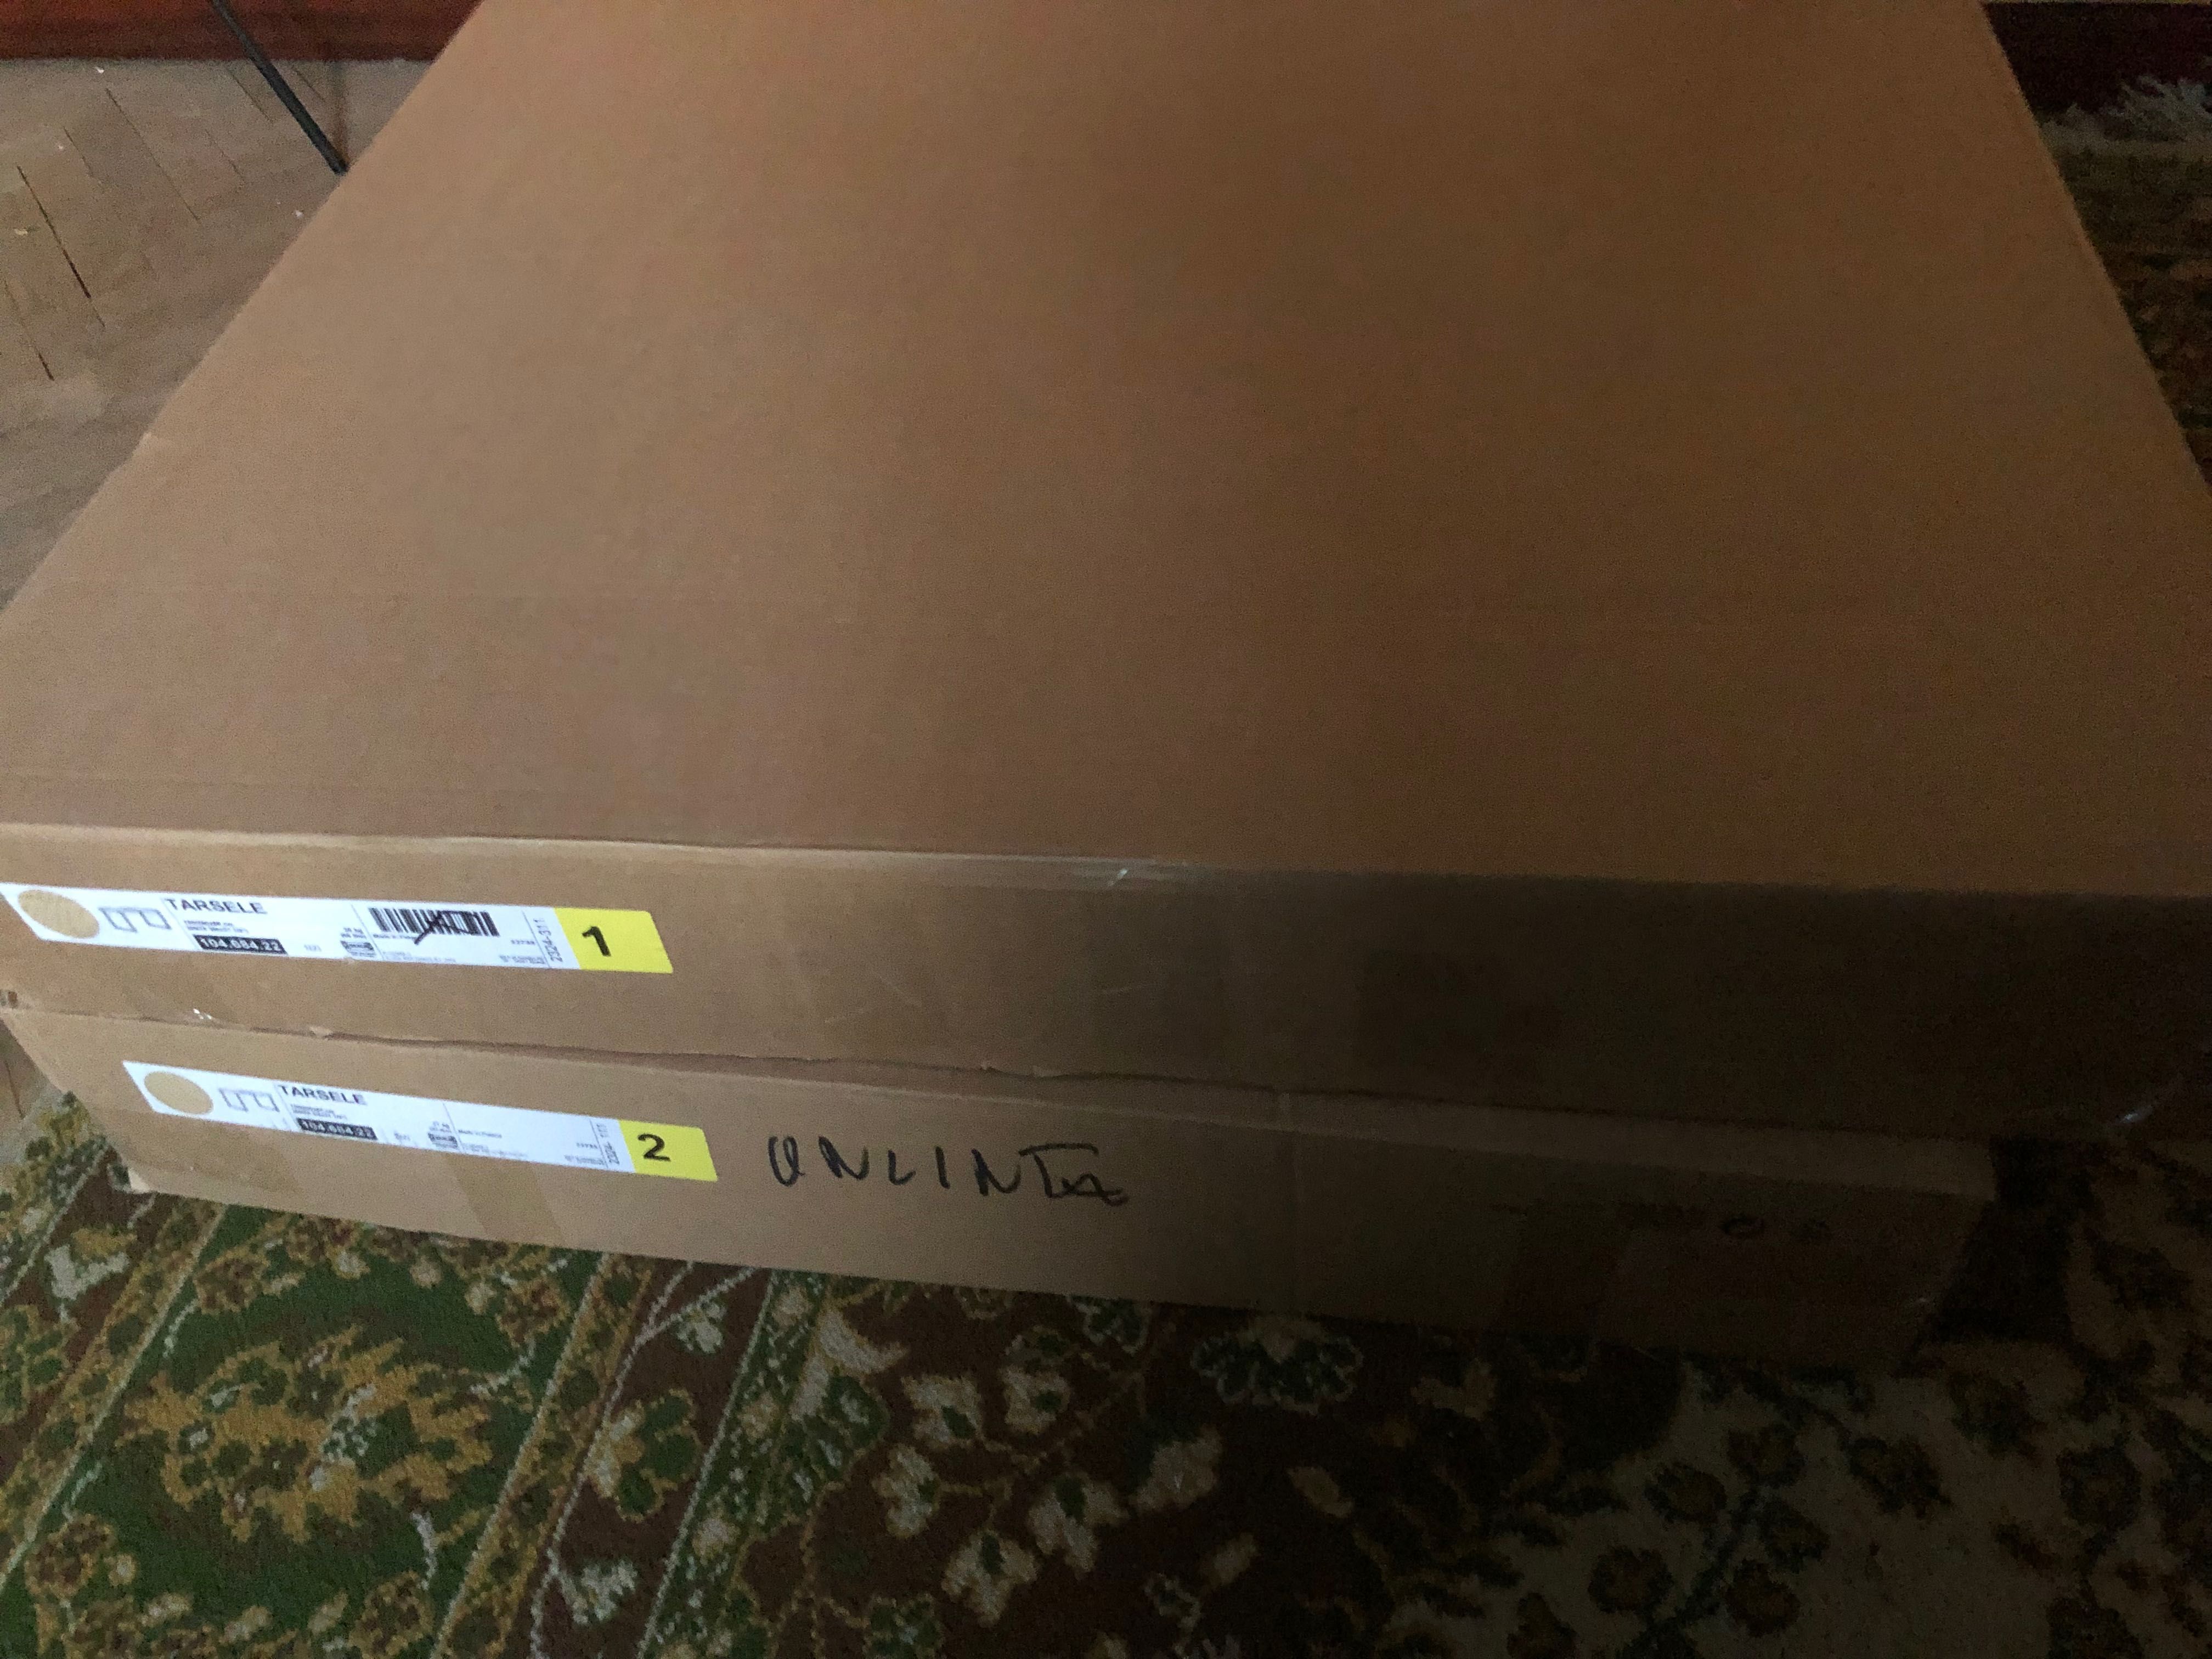 Ikea TARSELE
Stół rozkładany, okl dęb/czarny, 150/200x80 cm